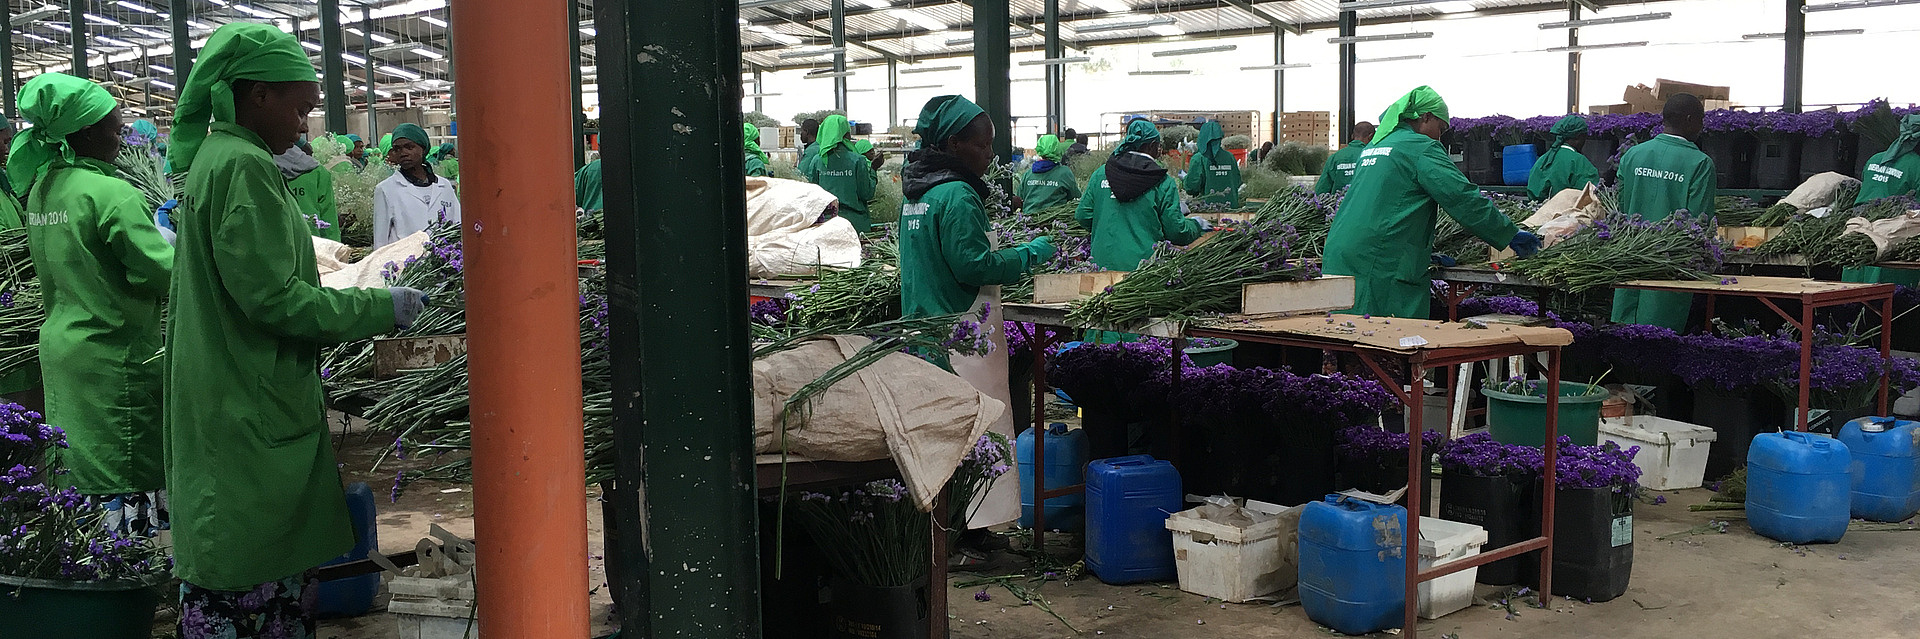 Arbeiter auf einer Blumenfarm in Kenia